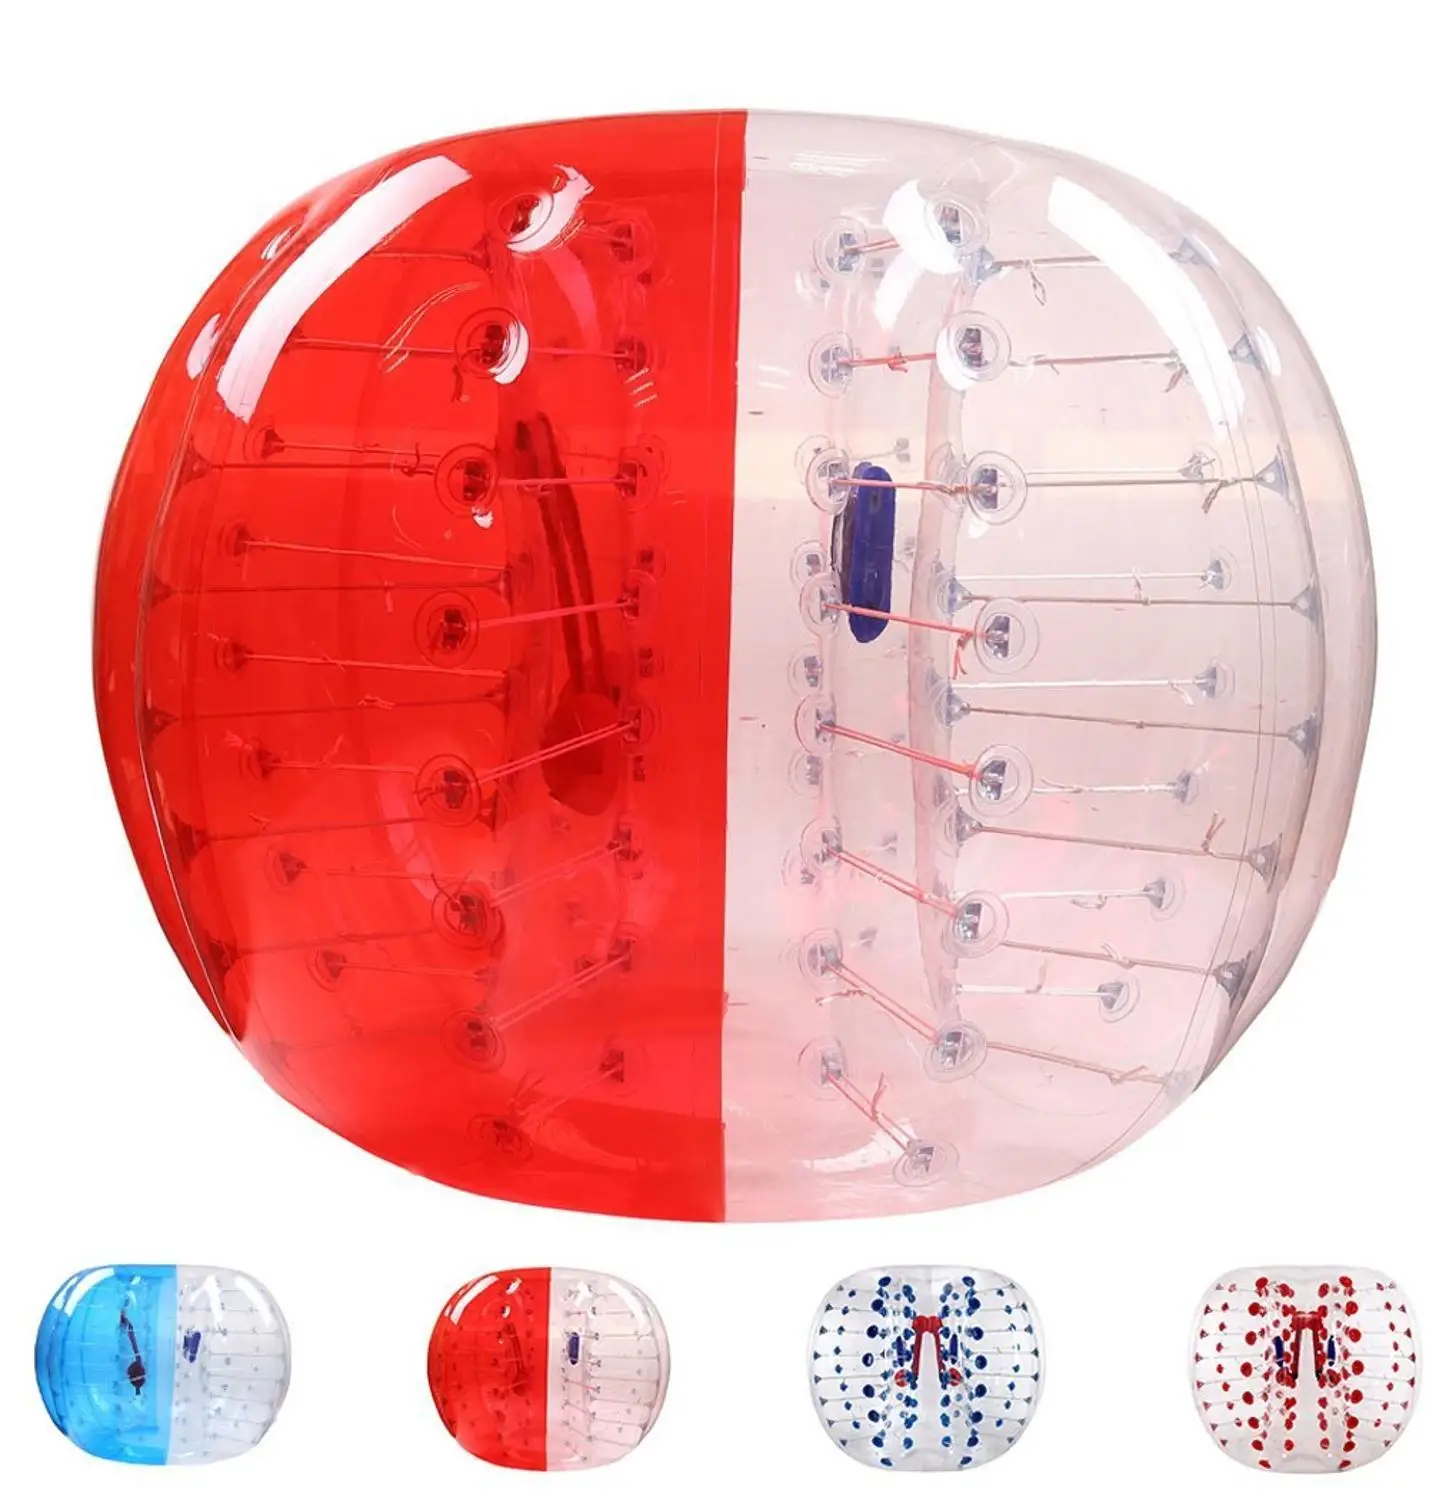 TPU Материал воздушный Зорб футбол Зорб мяч 1 м 1,2 м 1,5 м 1,7 м надувной бампербол взрослый надувной шар для игры в футбол, Зорб мяч - Цвет: 1.5m Red clear